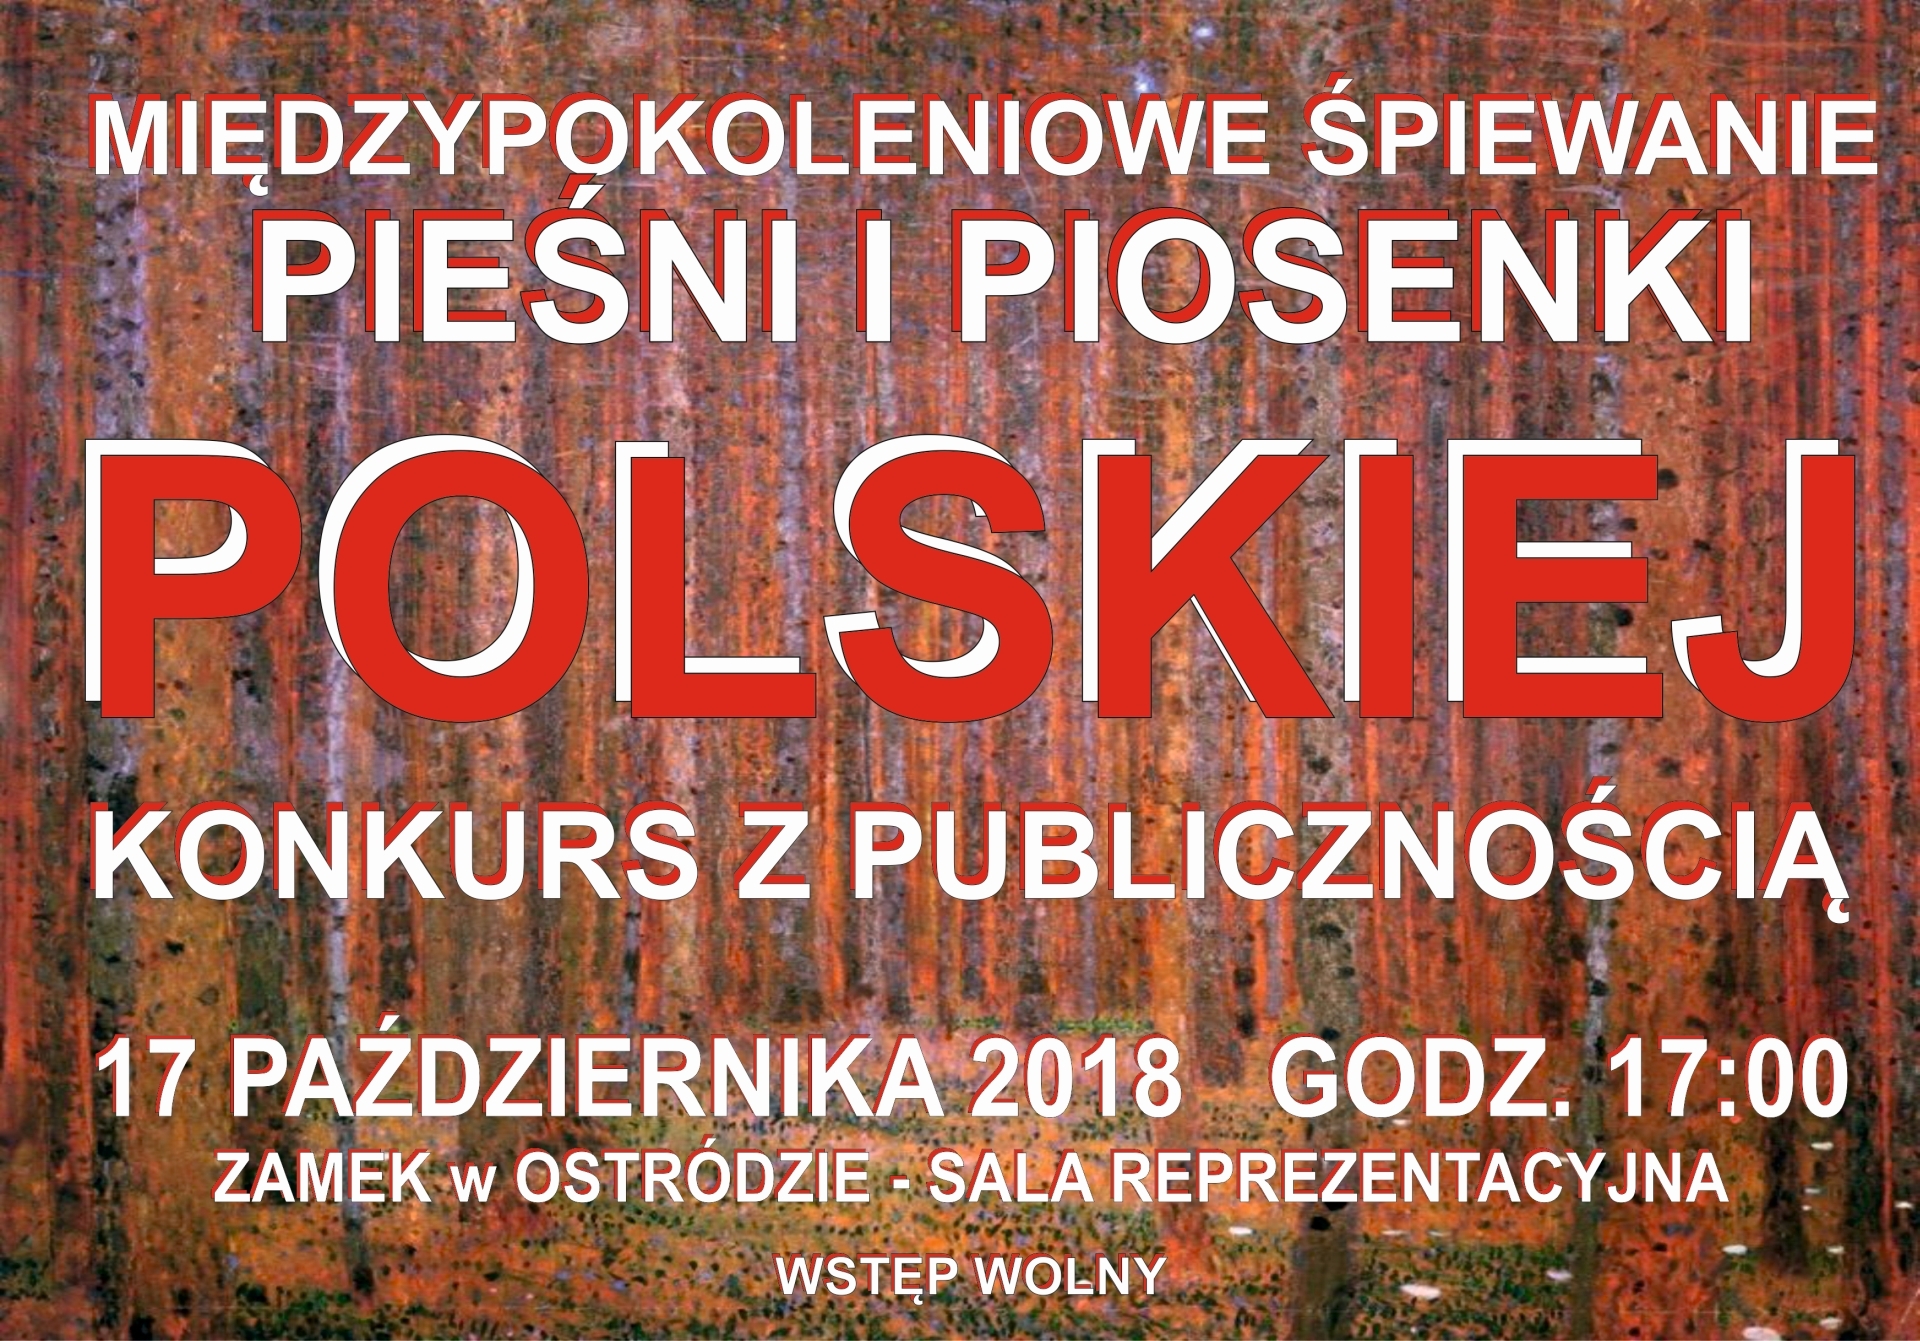 Konkurs  Piosenki Polskiej z publicznością